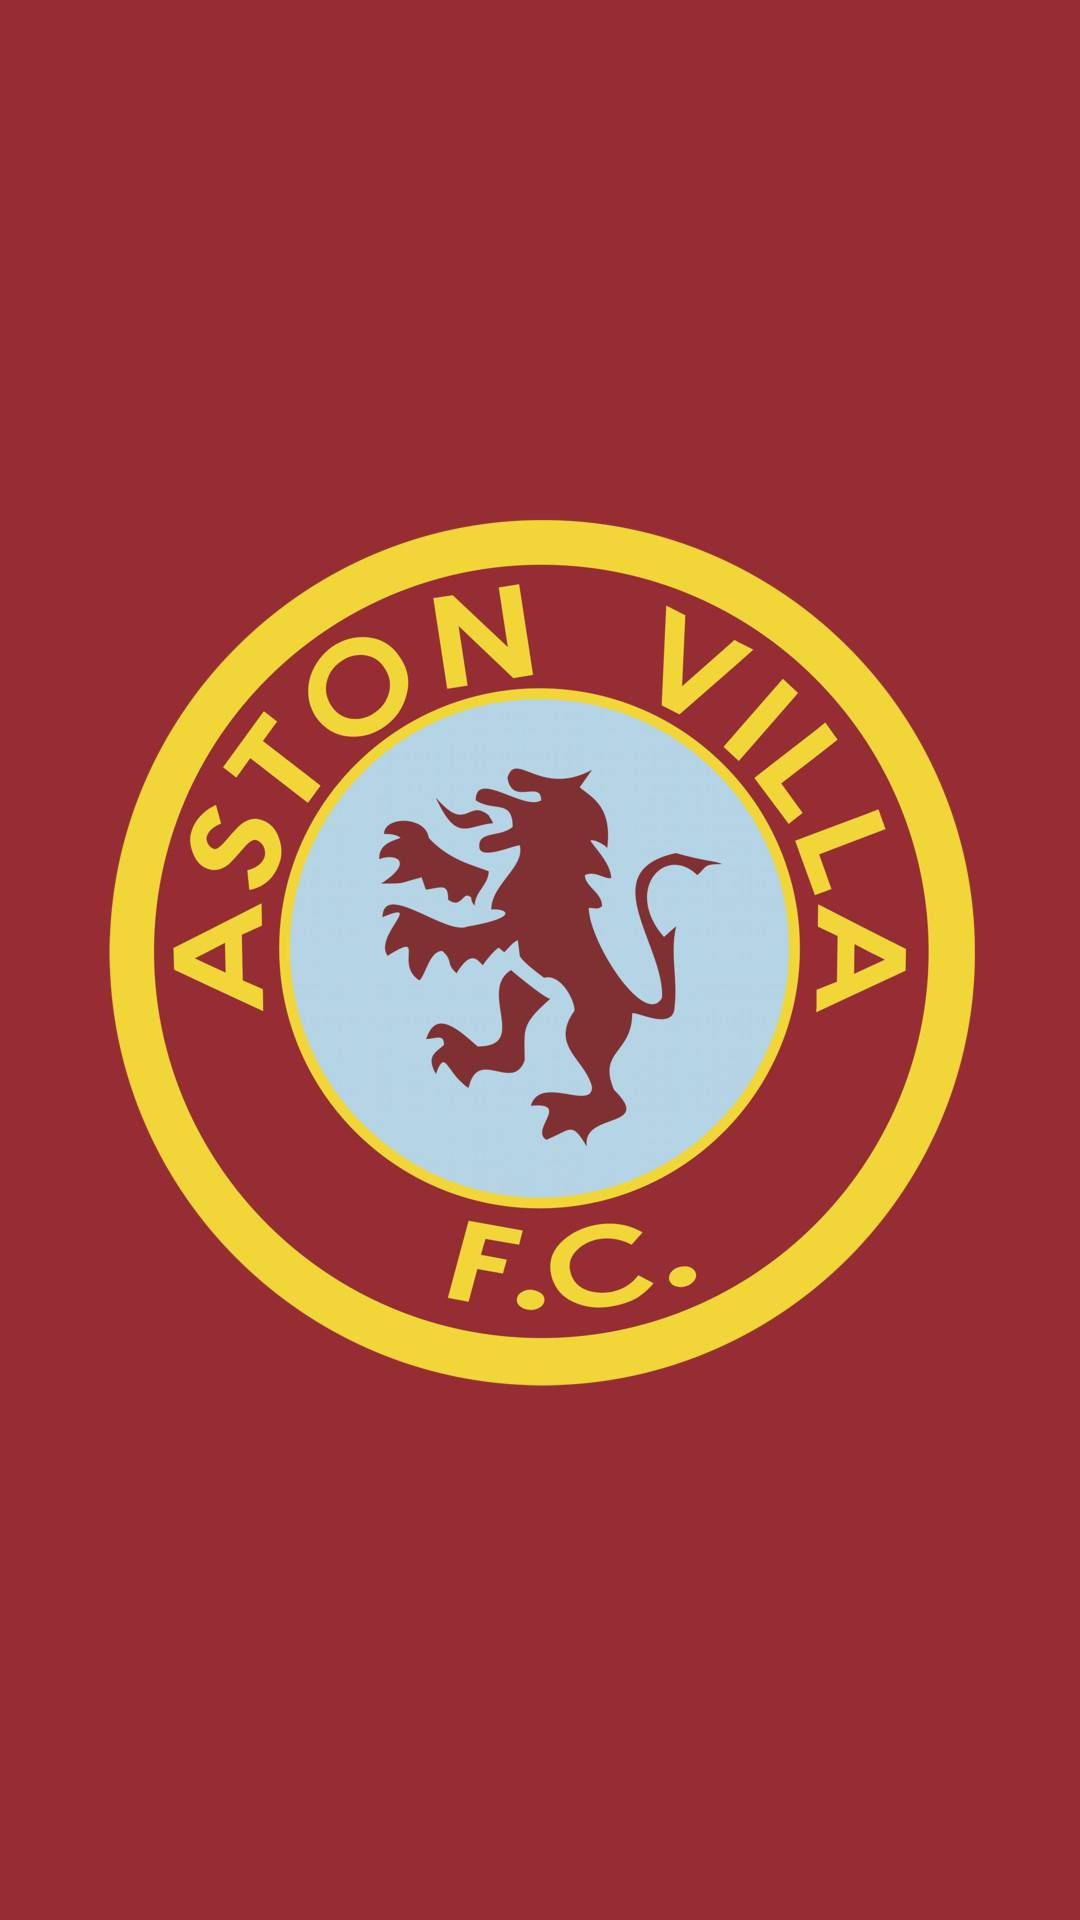 Aston Villa Fc Badge Wallpaper